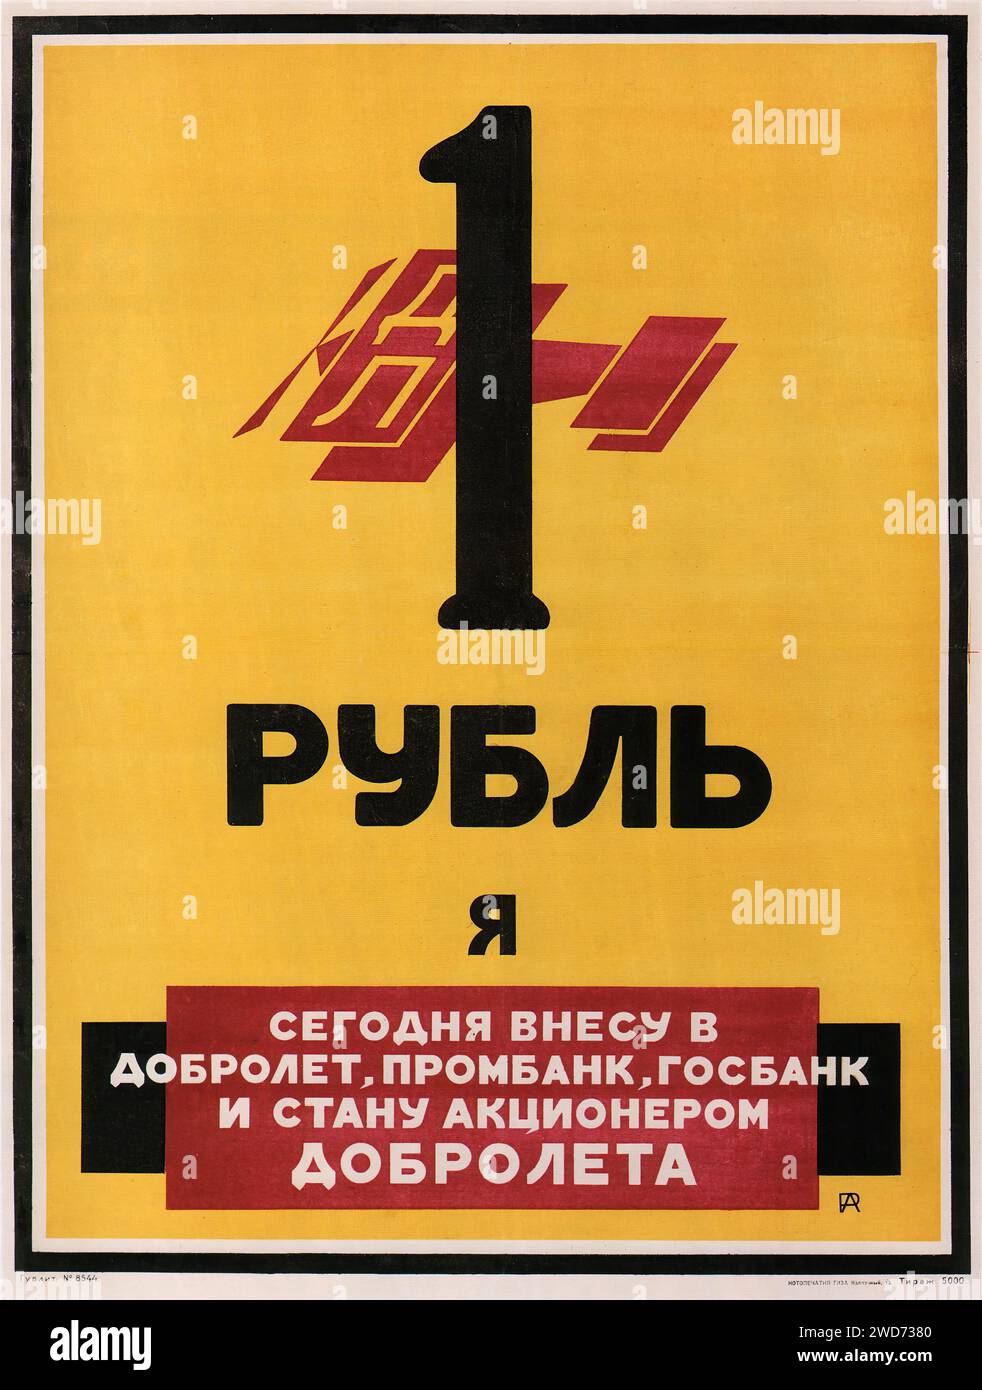 Un rouble pour Dobrolet. Alexander Rodchenko, 1923 - Publicité et propagande soviétiques vintage - '1 ROUBLE I' ' , , ' | 'AUJOURD'HUI, je VAIS CONTRIBUER À DOBROLET, PROMBANK, GOSBANK ET DEVENIR ACTIONNAIRE DE DOBROLEt' Description : cette affiche graphique comporte un chiffre en gras '1' et le message sur la contribution d'un rouble à Dobrolet, Prombank et Gosbank, et devenir actionnaire de Dobrolet. Le design est simple mais efficace, utilisant des éléments minimalistes et une typographie large pour transmettre son message, typique du desi graphique soviétique Banque D'Images